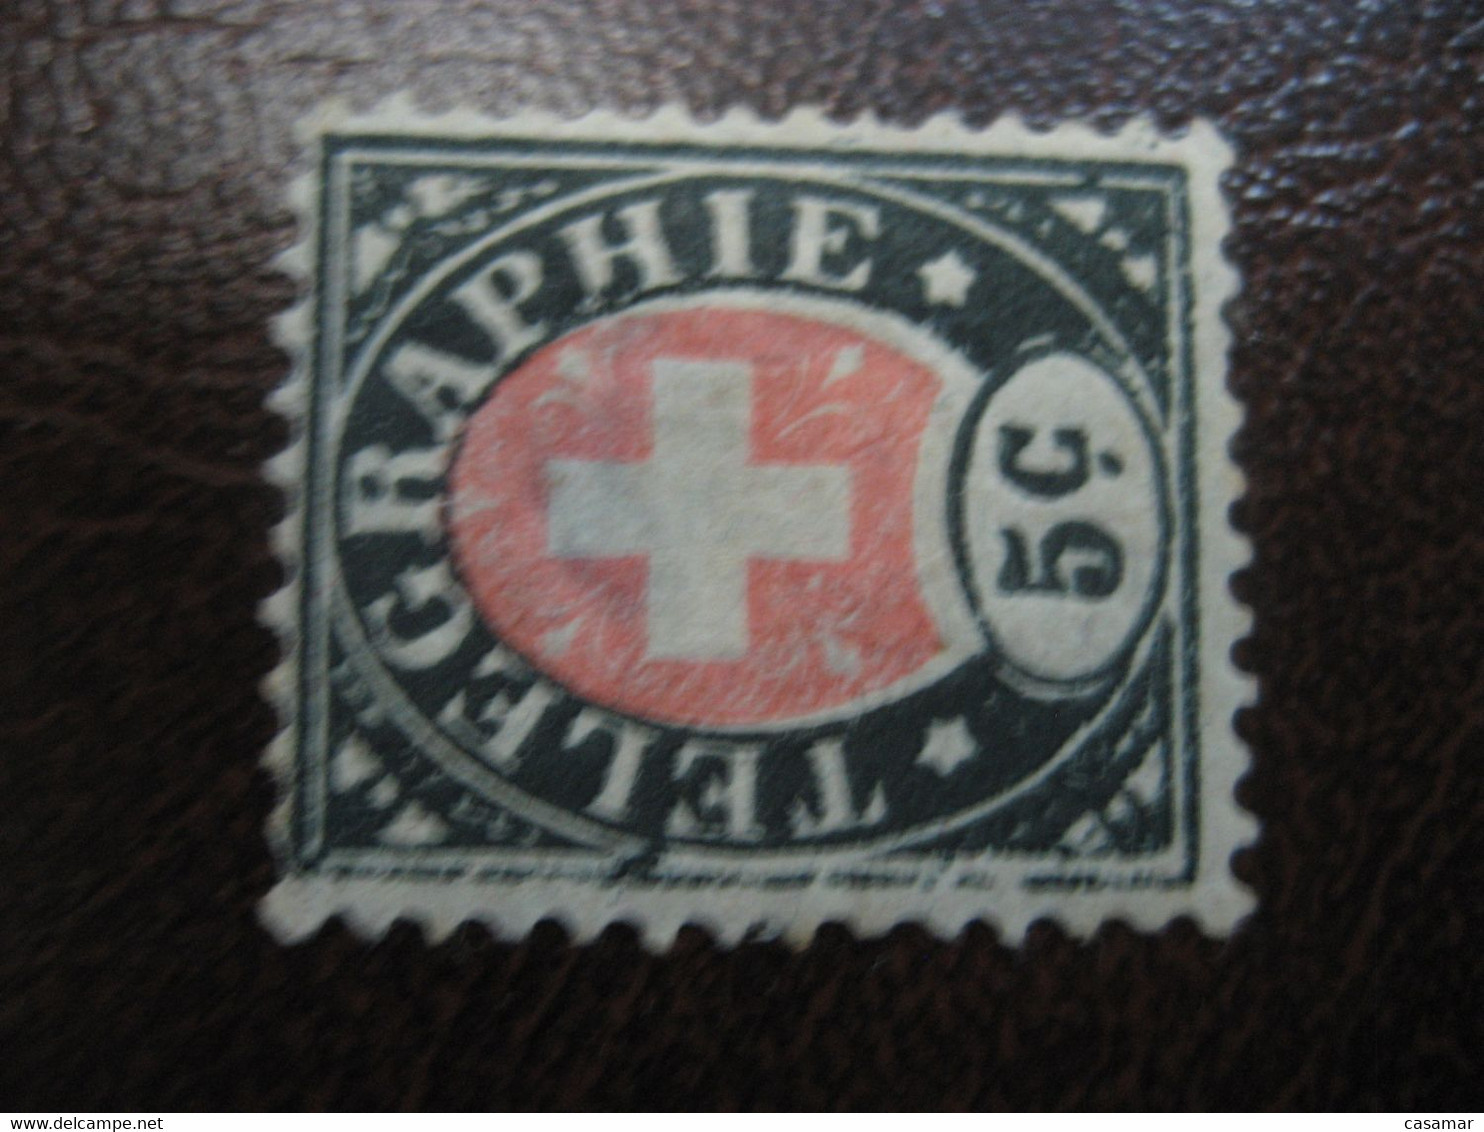 5c TELEGRAPHIE Telegraph SWITZERLAND Fiscal Revenue Suisse - Telegraph